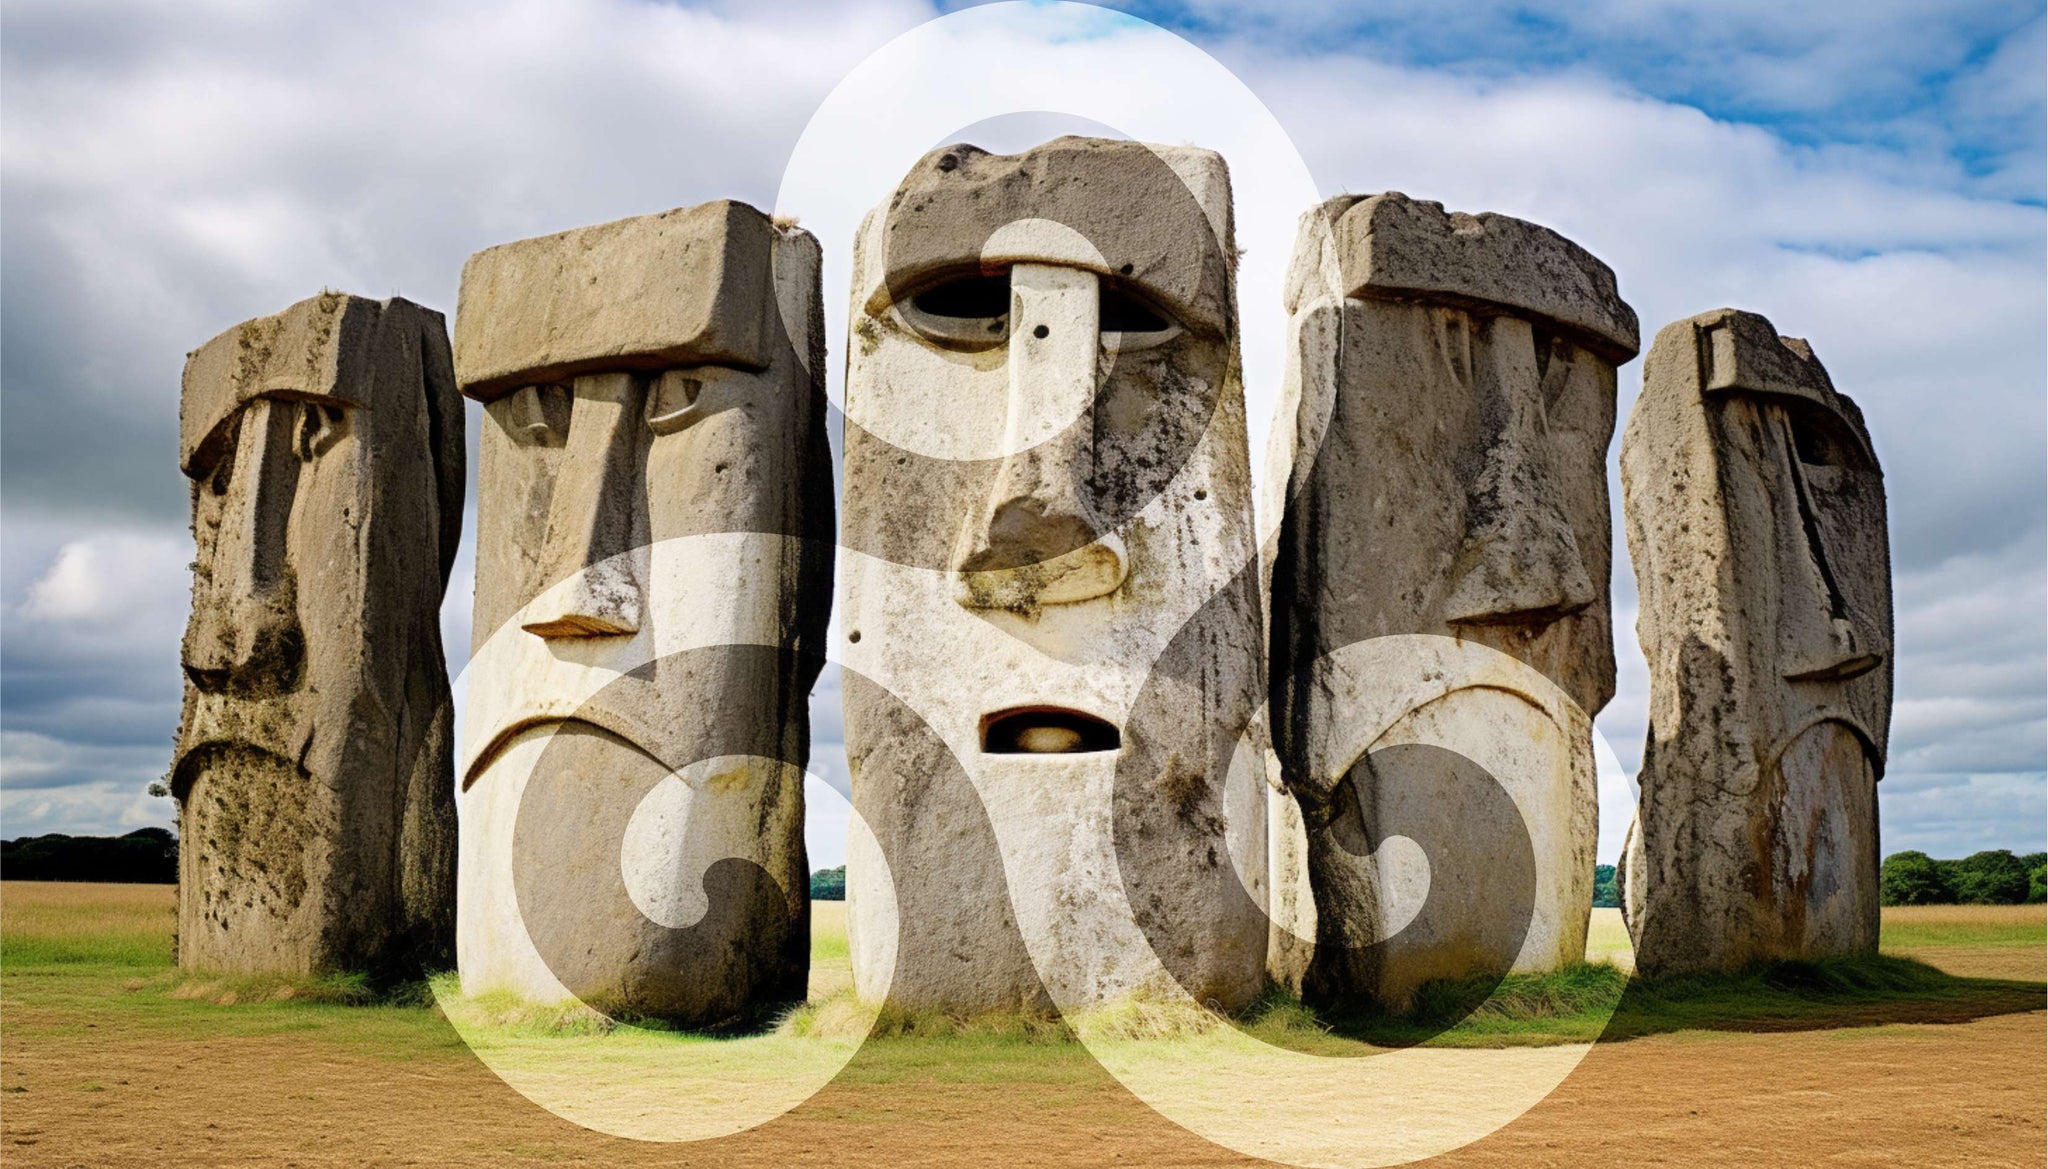 sous l'impulsion du triskel, les pierres de stonehenge parlent la langue des celtes